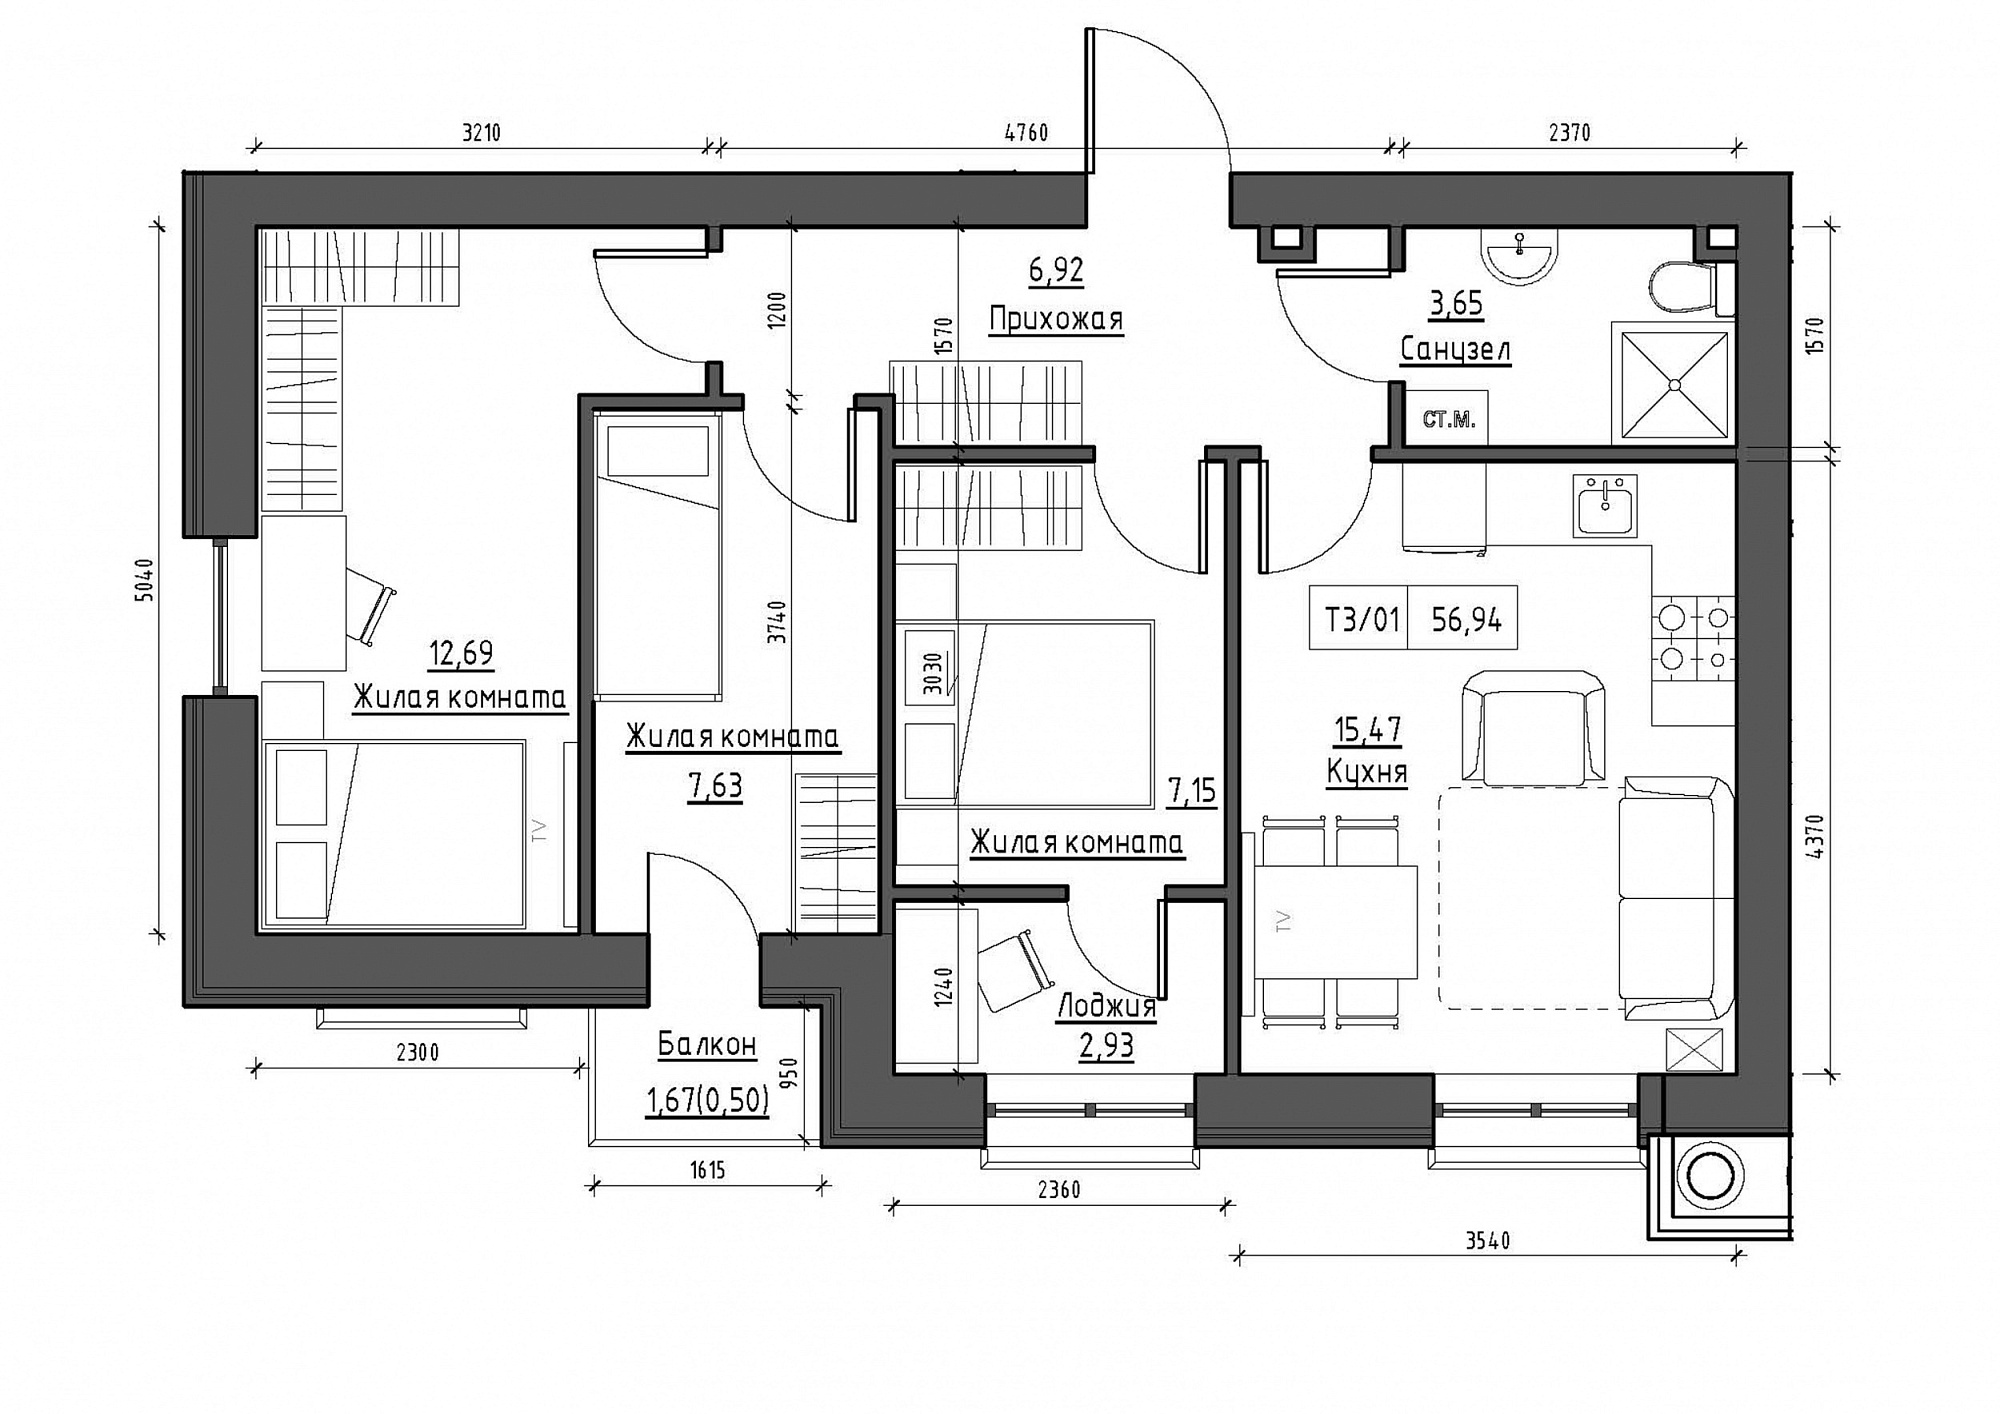 Планування 3-к квартира площею 56.94м2, KS-012-02/0008.